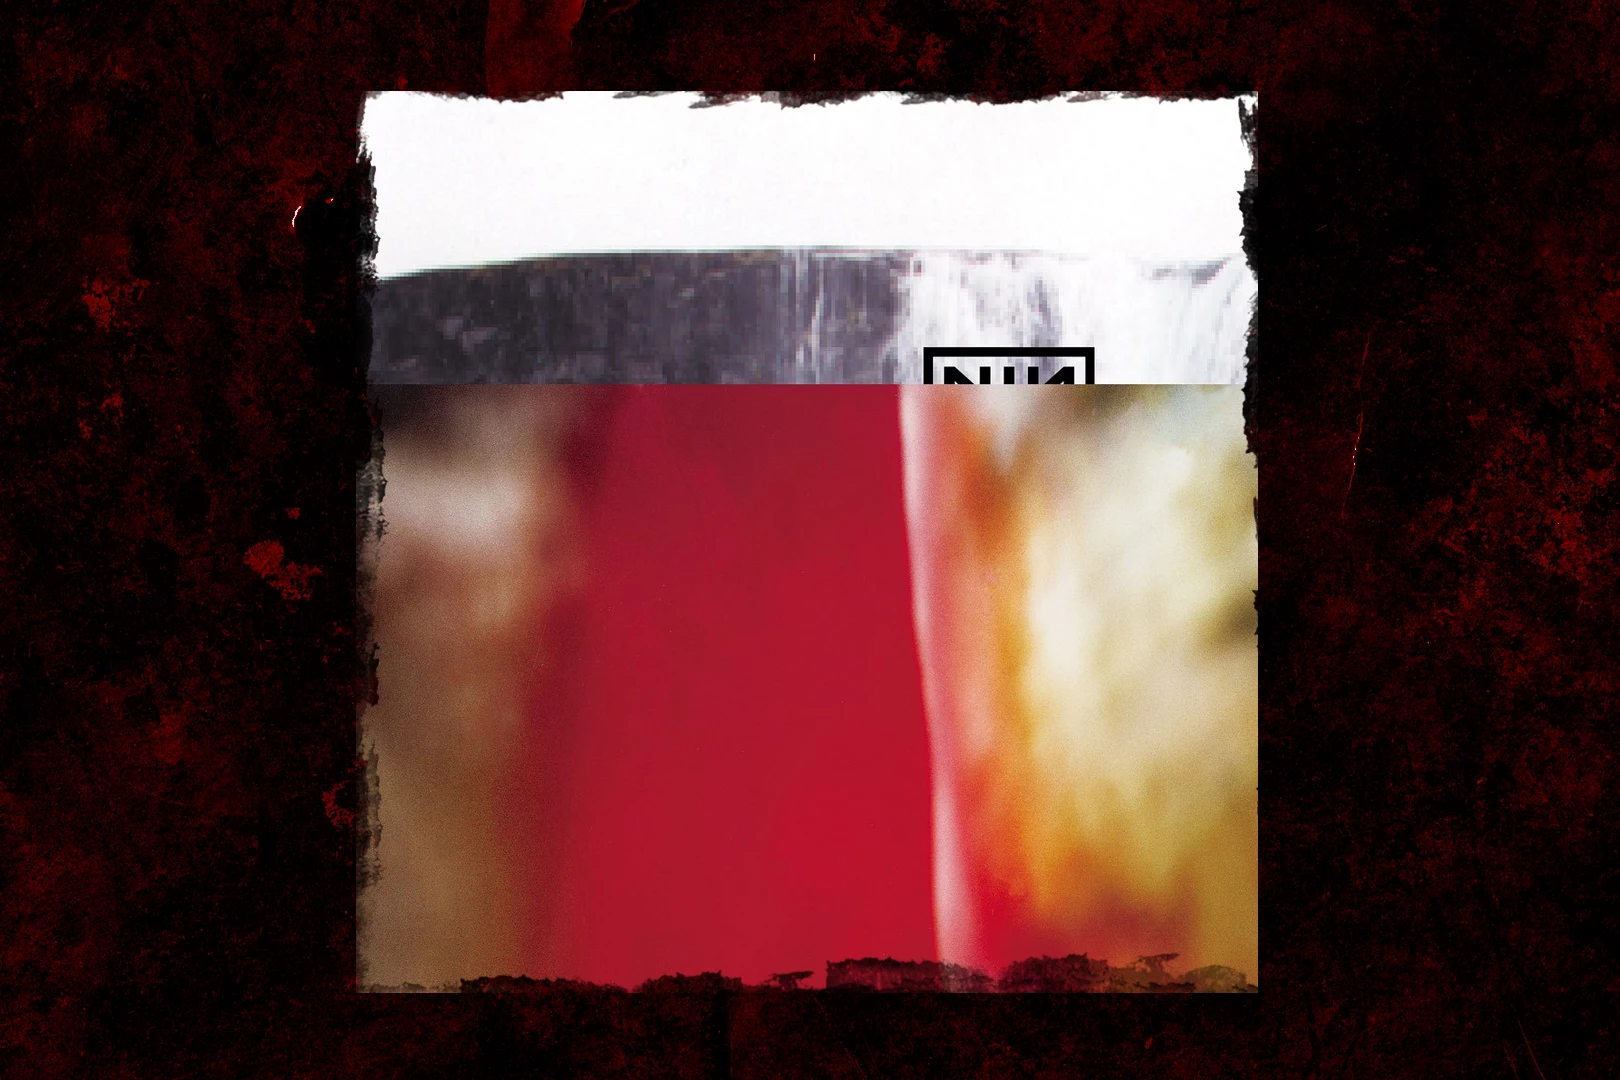 Pitchfork - Nine Inch Nails' The Downward Spiral turns 30... | Facebook